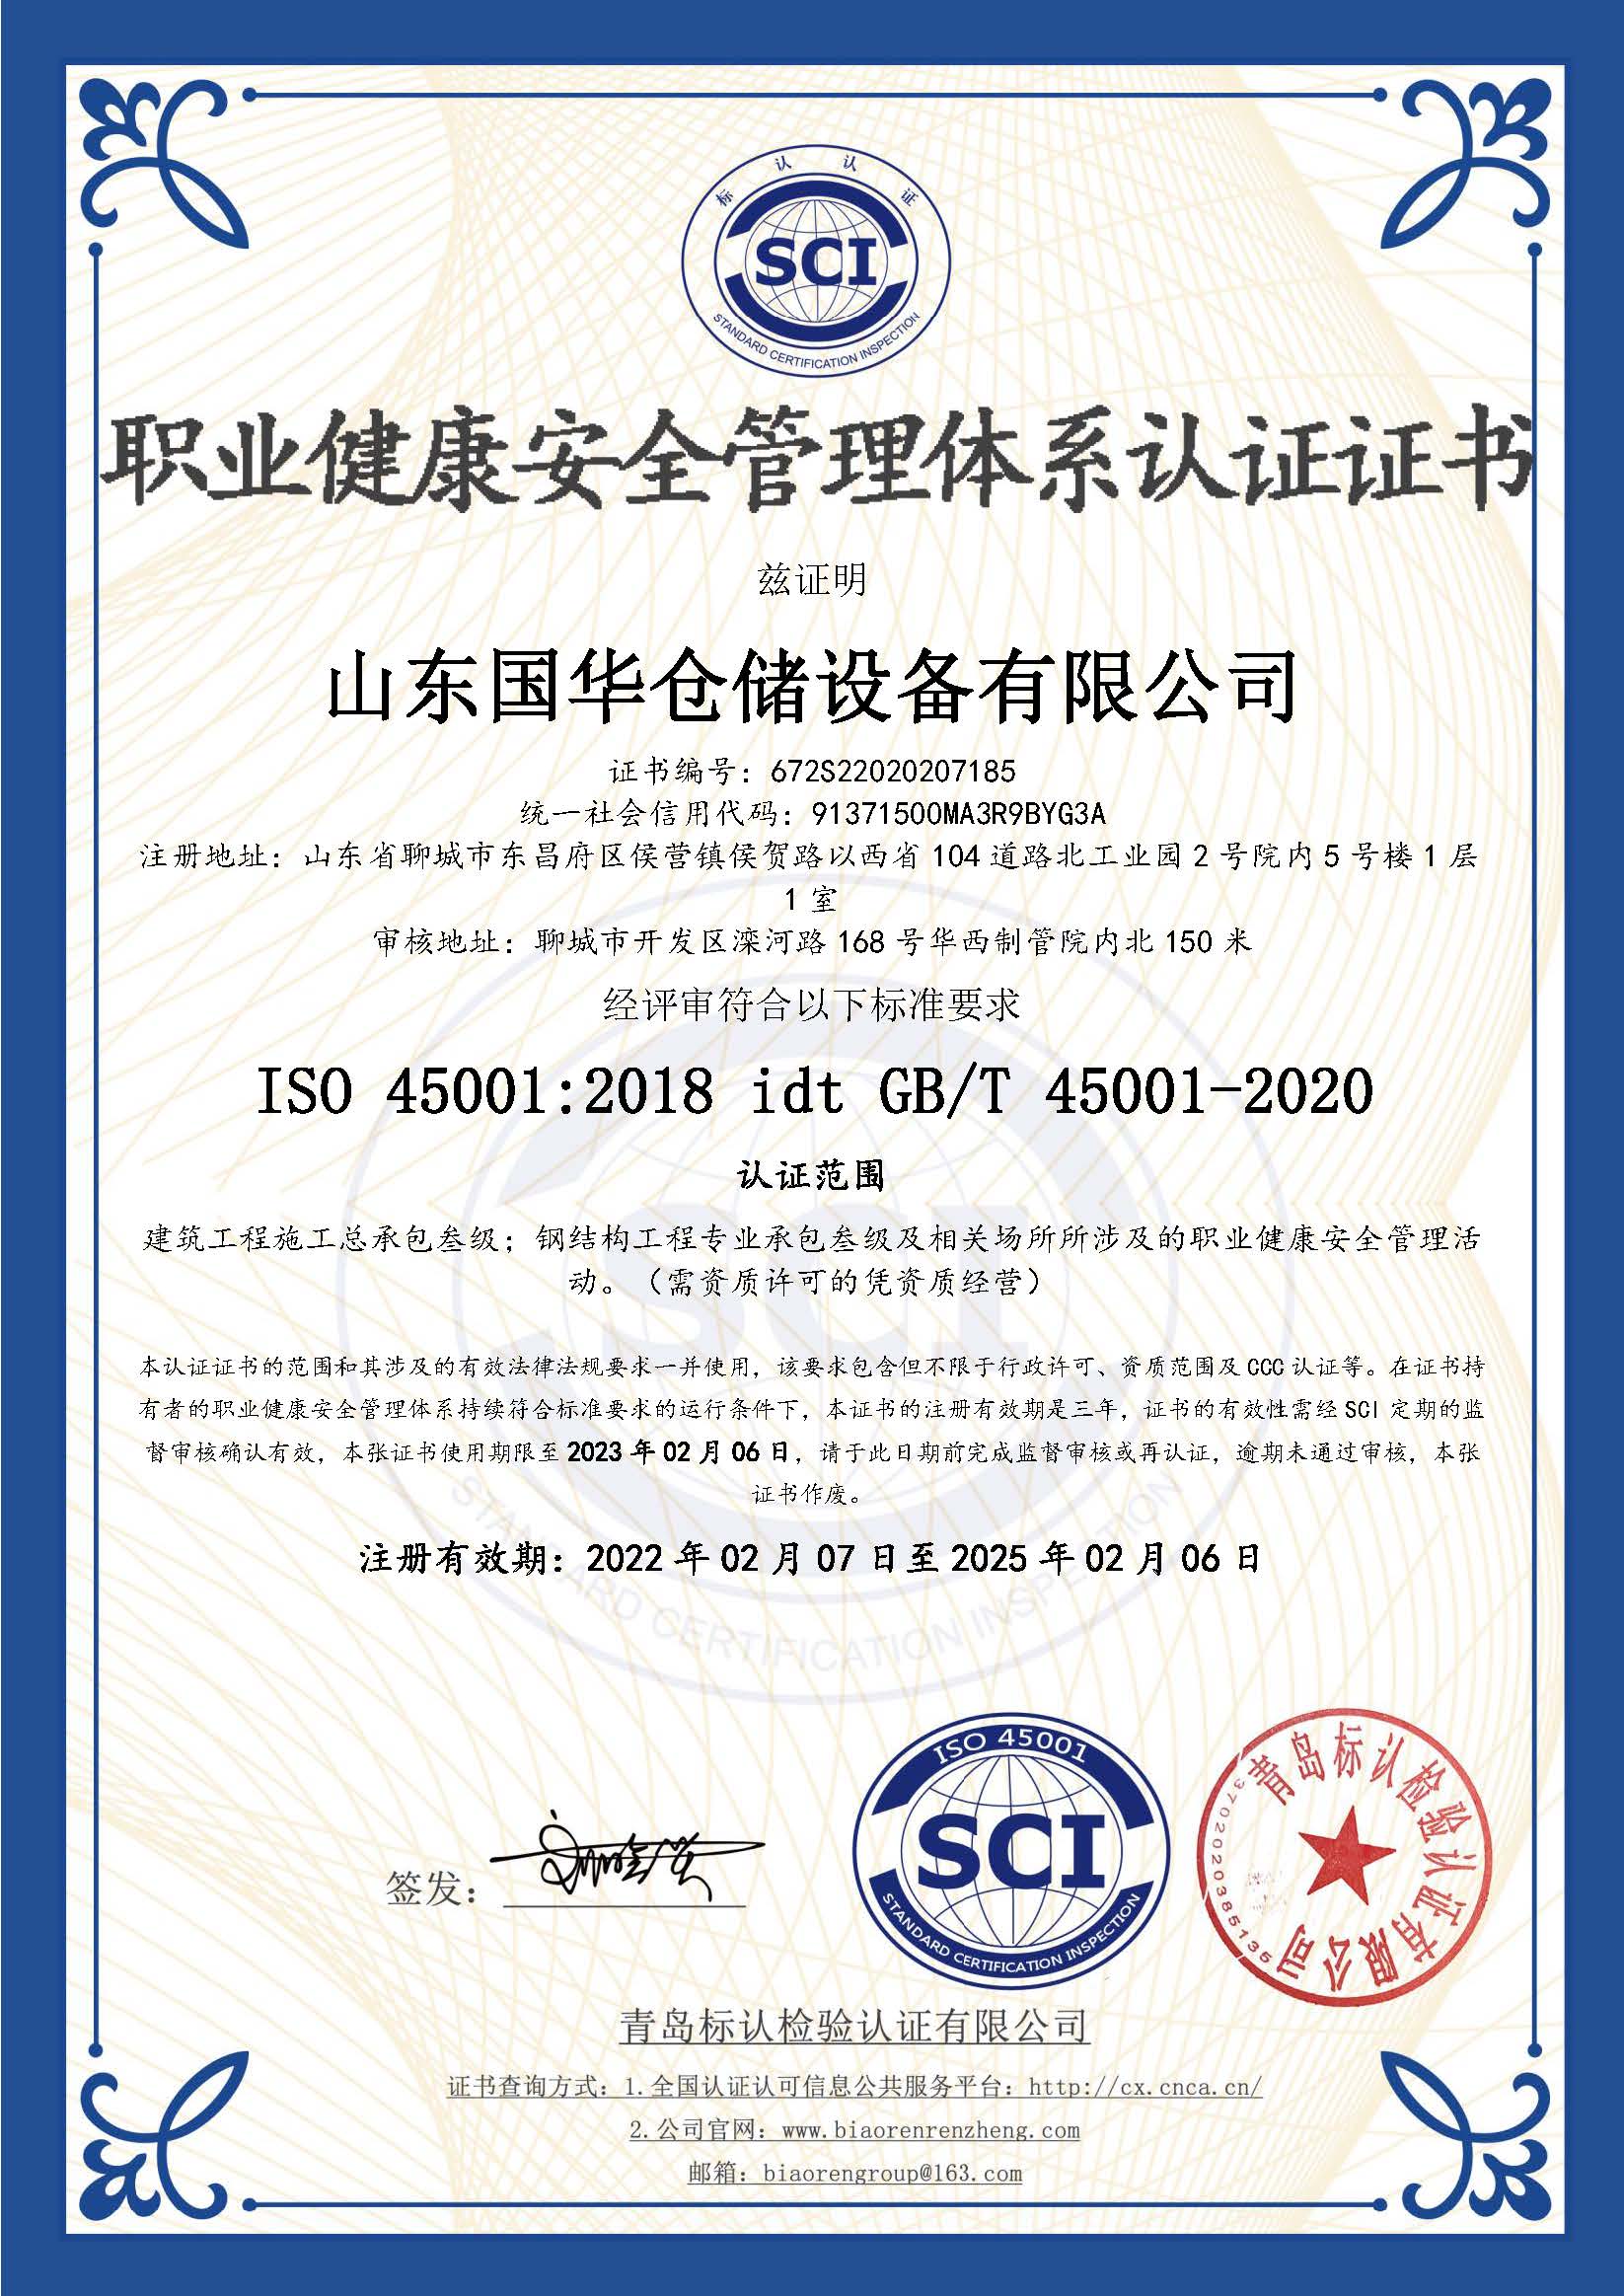 西藏钢板仓职业健康安全管理体系认证证书